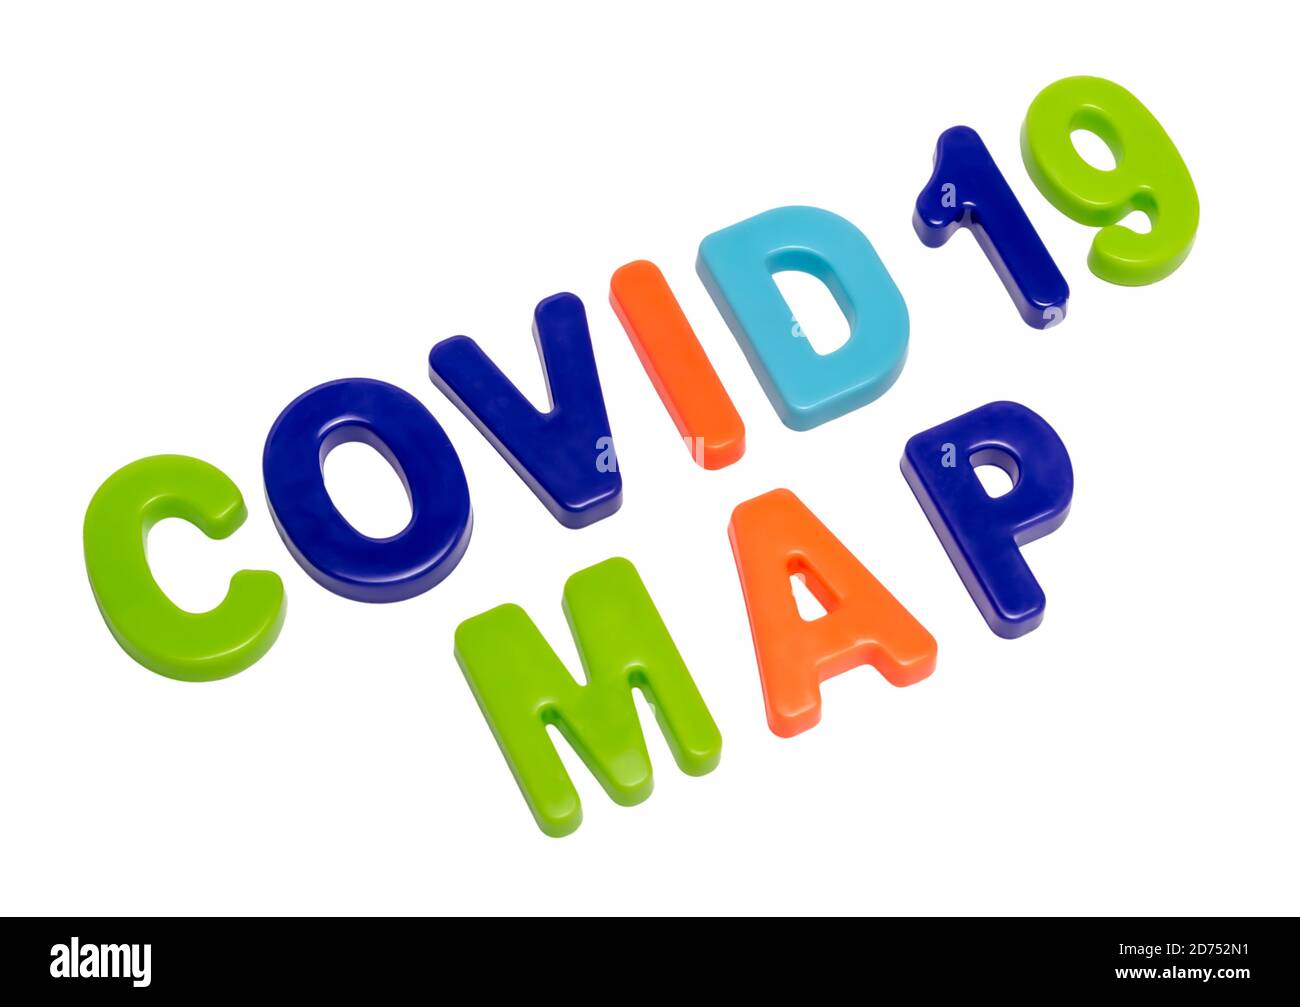 Coronavirus-Pandemie, Text COVID-19 KARTE auf weißem Hintergrund. Verteilungskarte der globalen Pandemie. COVID-19 ist offiziell der neue Name für Coronavi Stockfoto